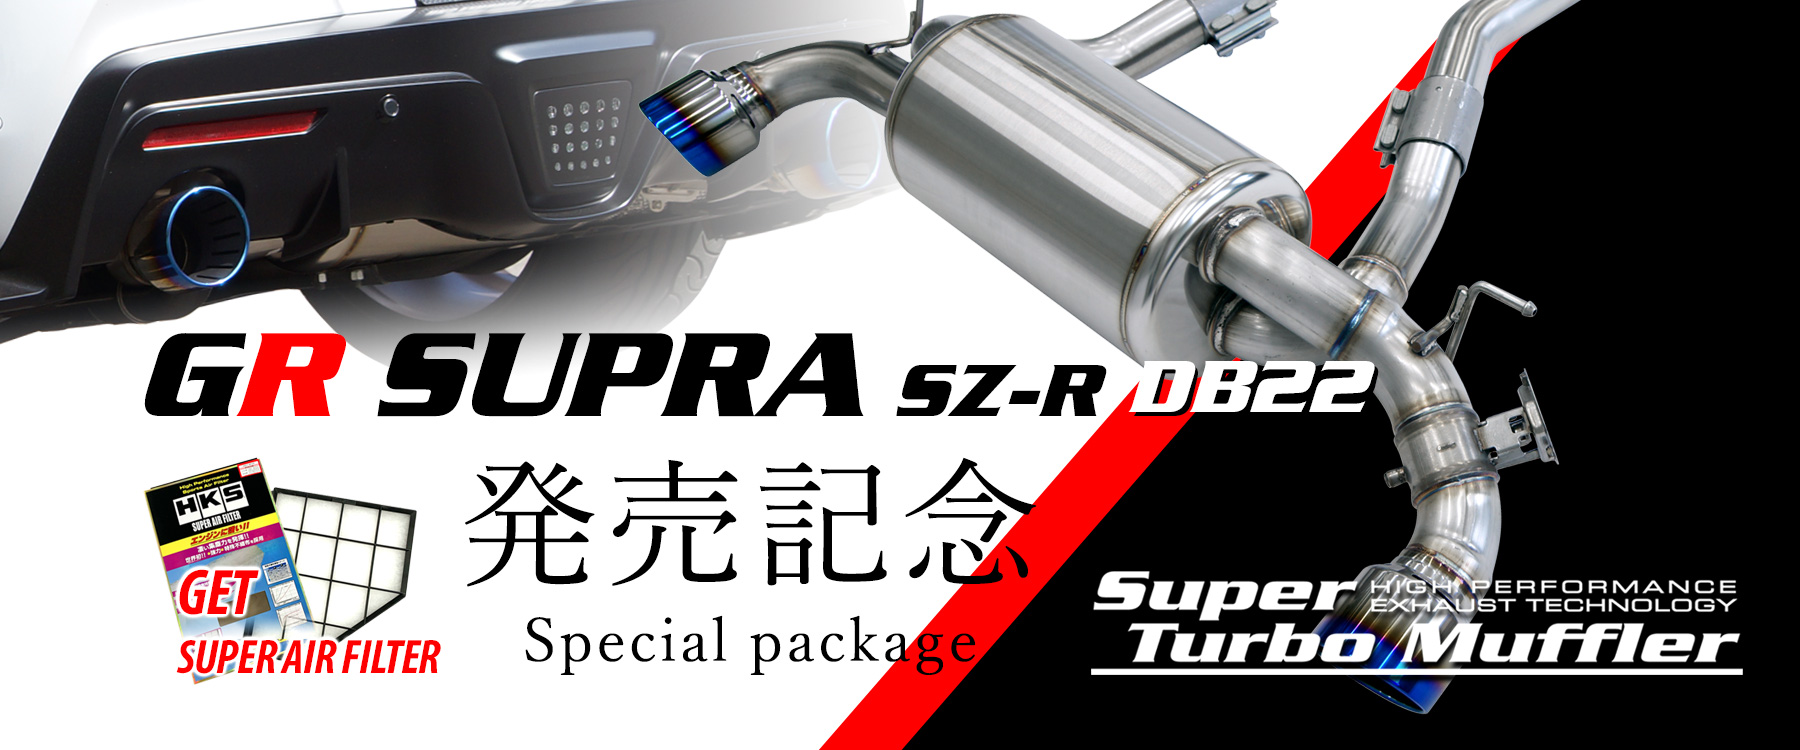 Super turbo Muffler「GR SUPRA DB42」発売記念